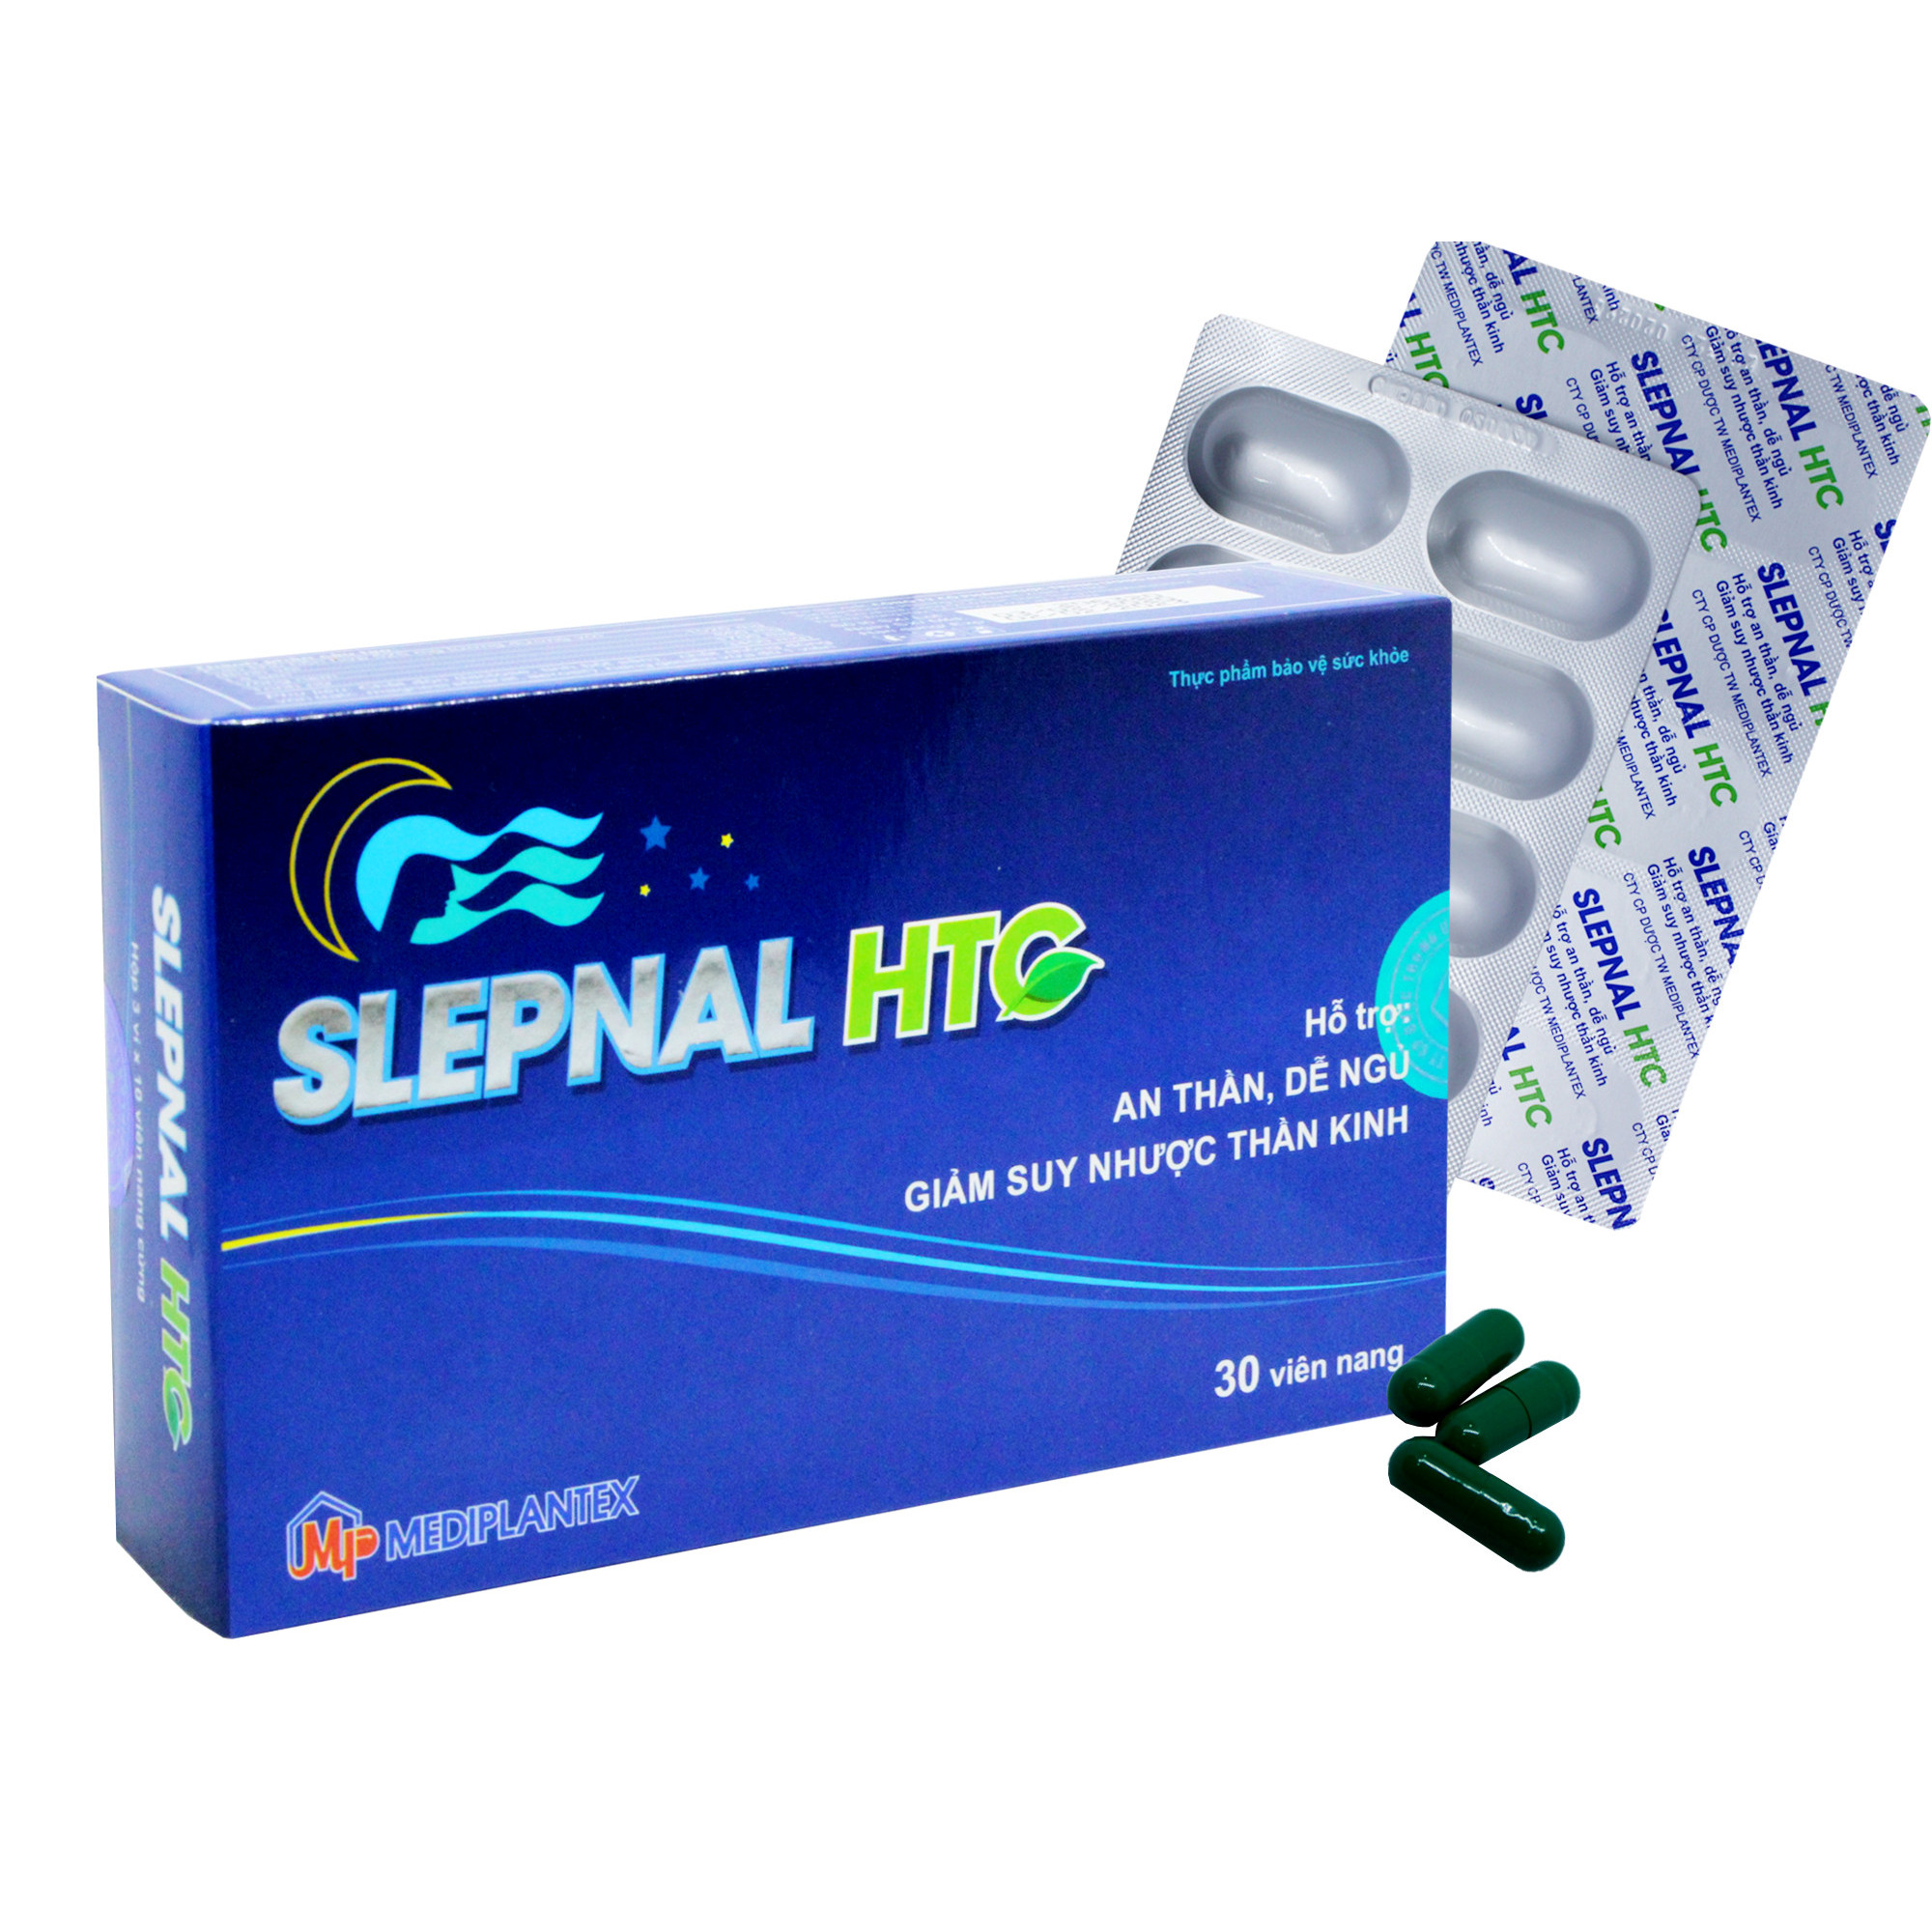 Viên uống hỗ trợ giác ngủ - Giảm suy nhược thần kinh SLEPNAL HTC - Mediplantex